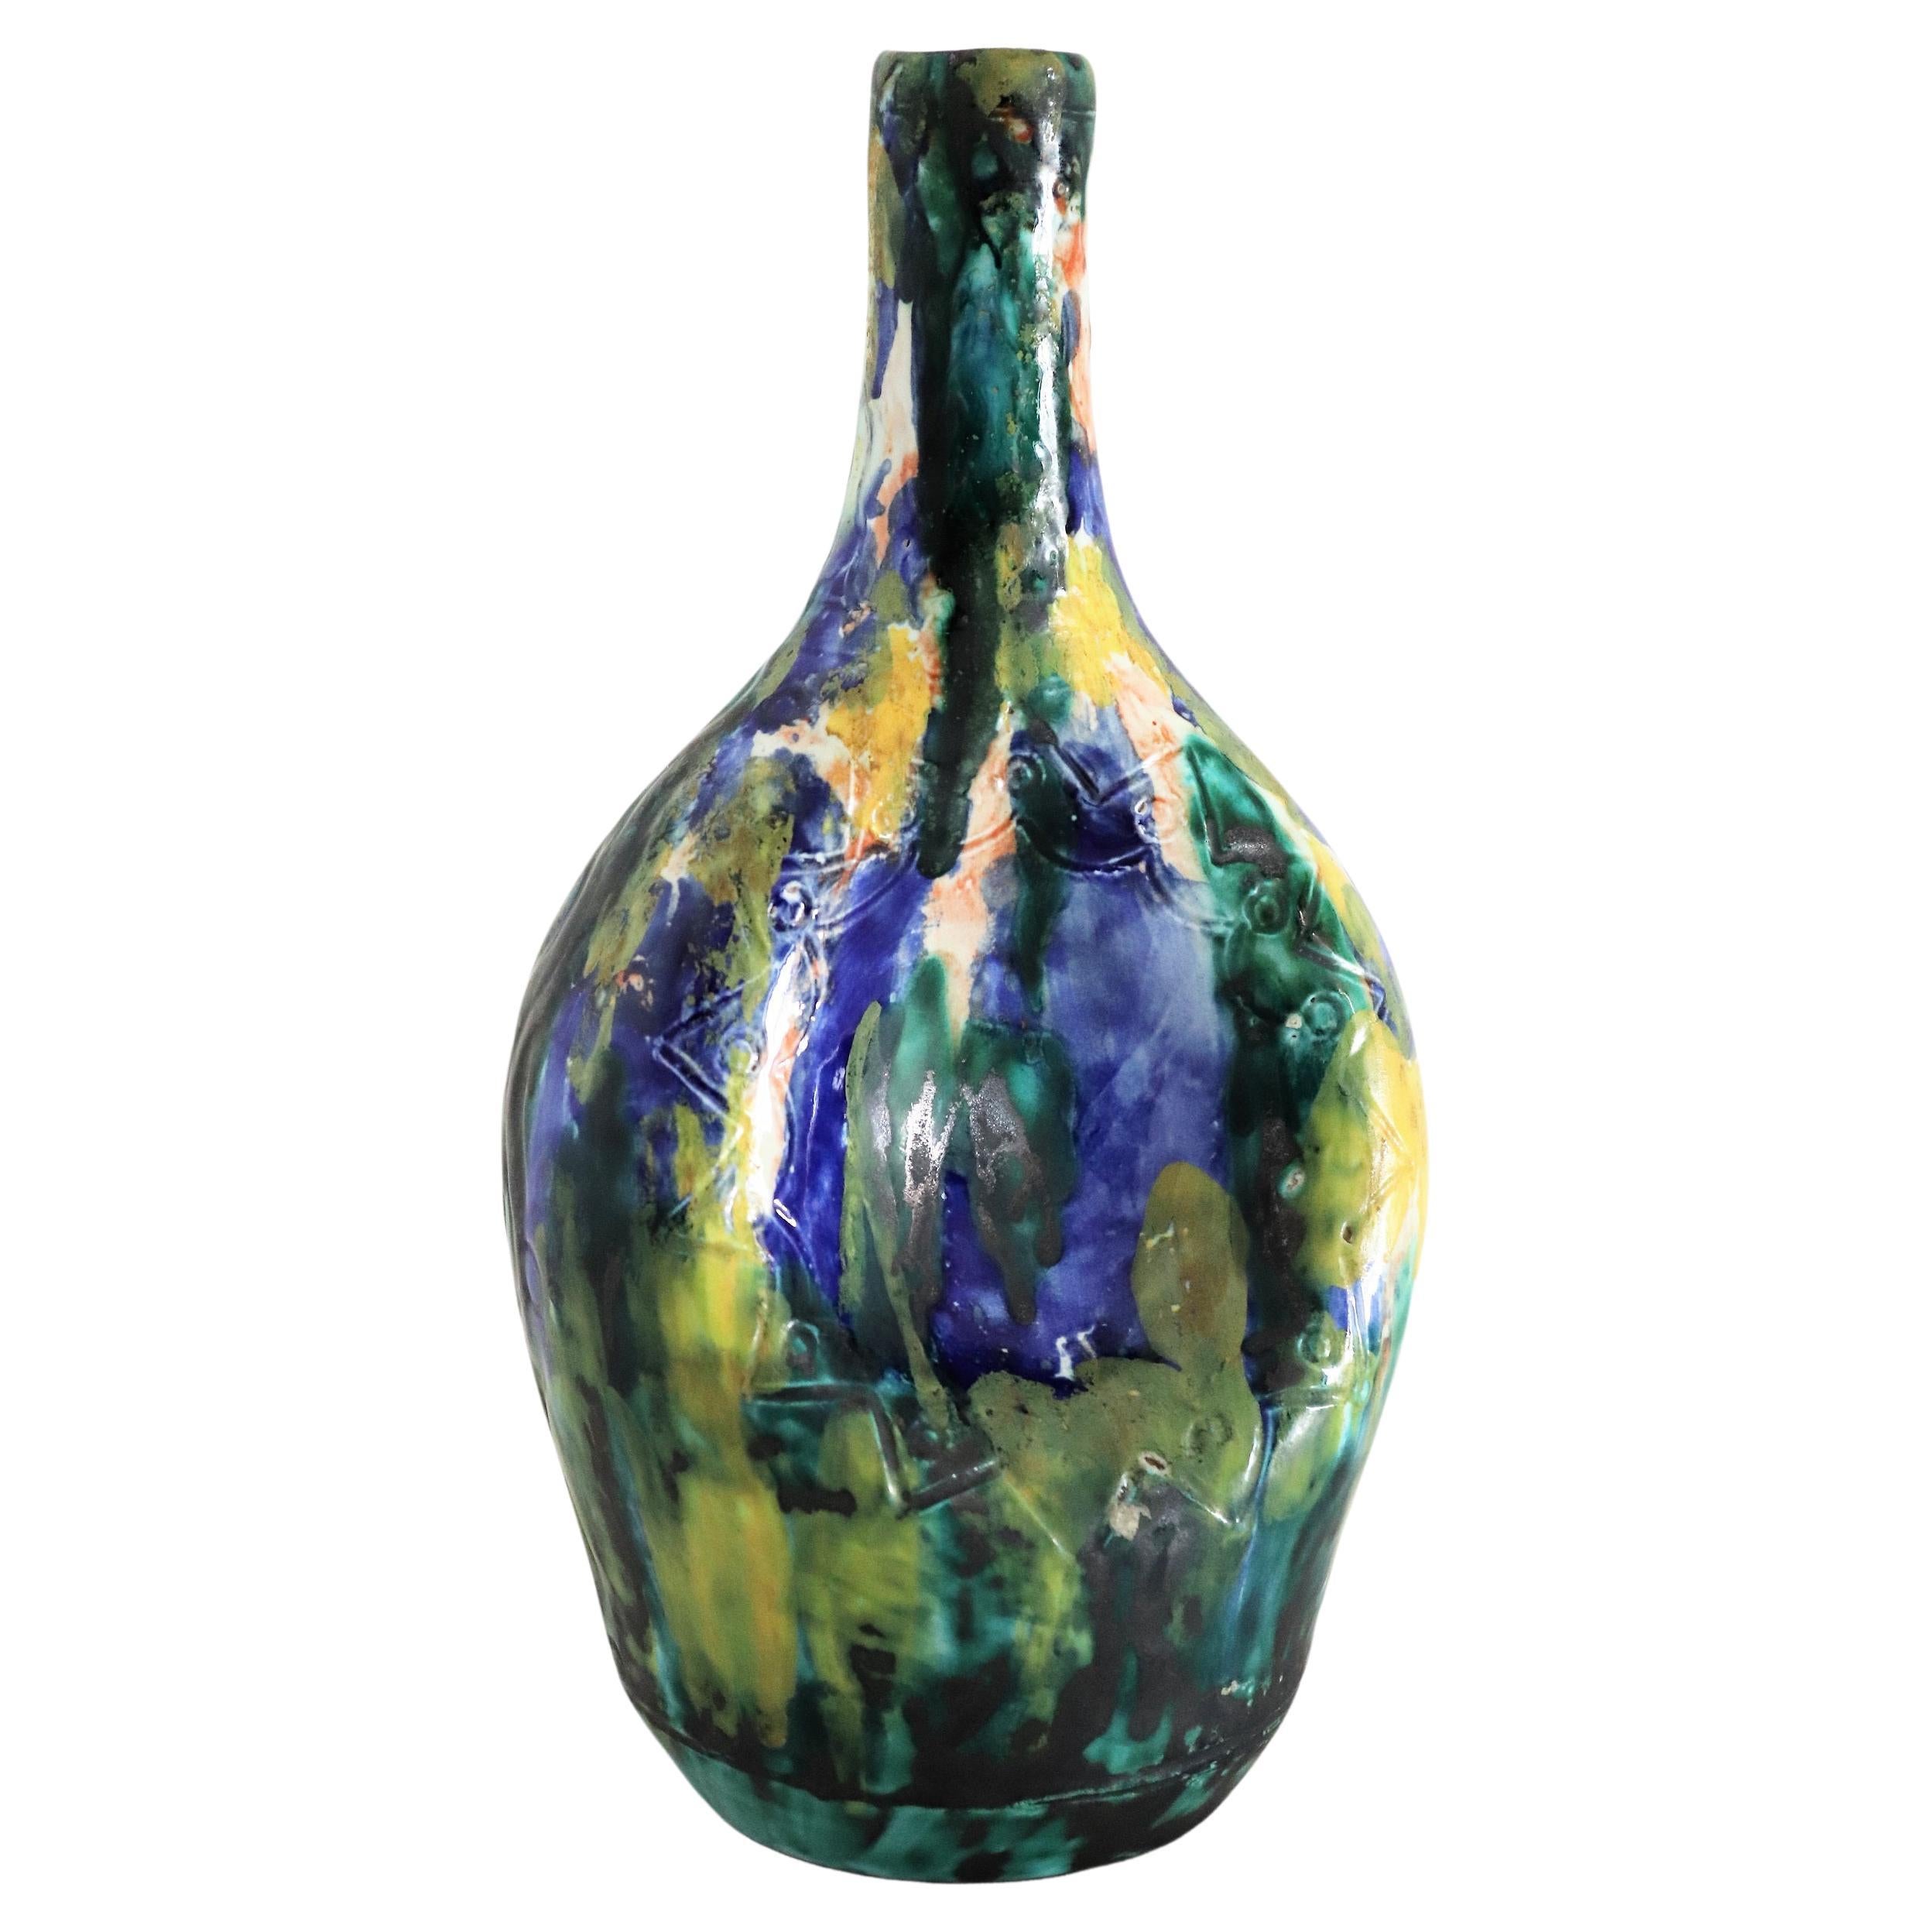 1950s Giuseppe Barile Albisola Italian Midcentury Modern Pottery Vase